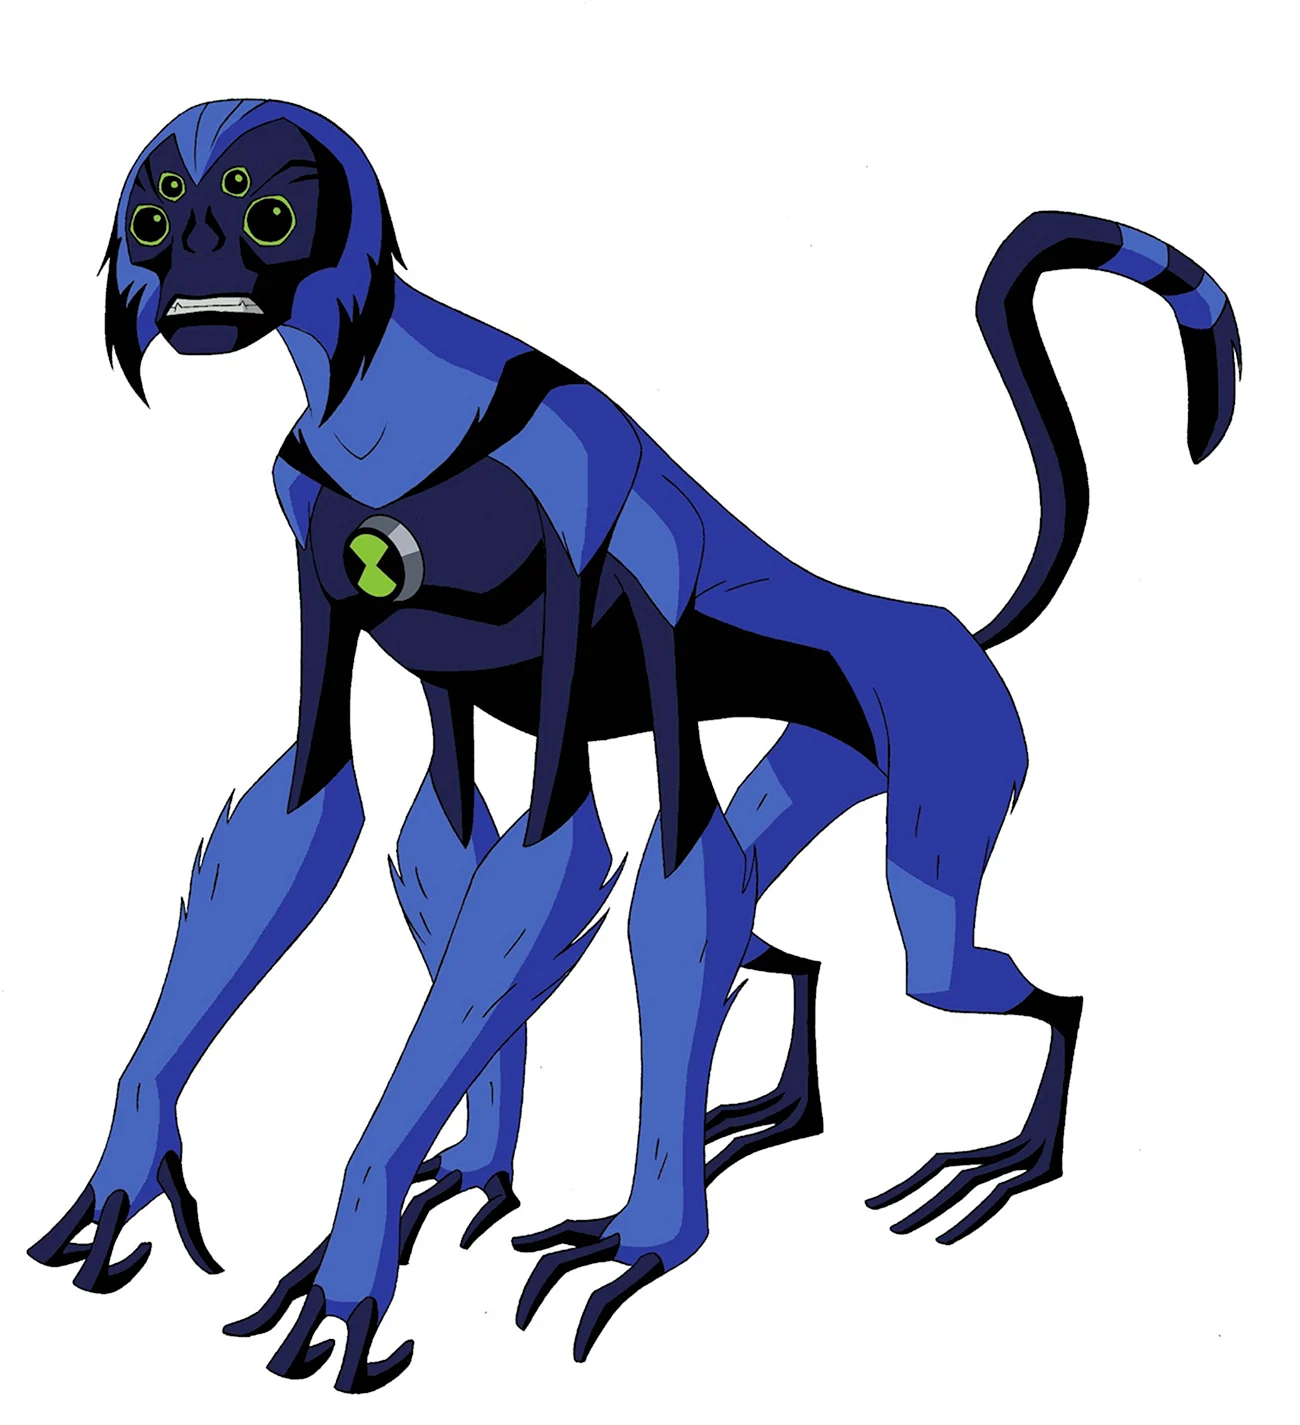 Бен 10 инопланетная сила обезьяна паук. Картинка из мультфильма